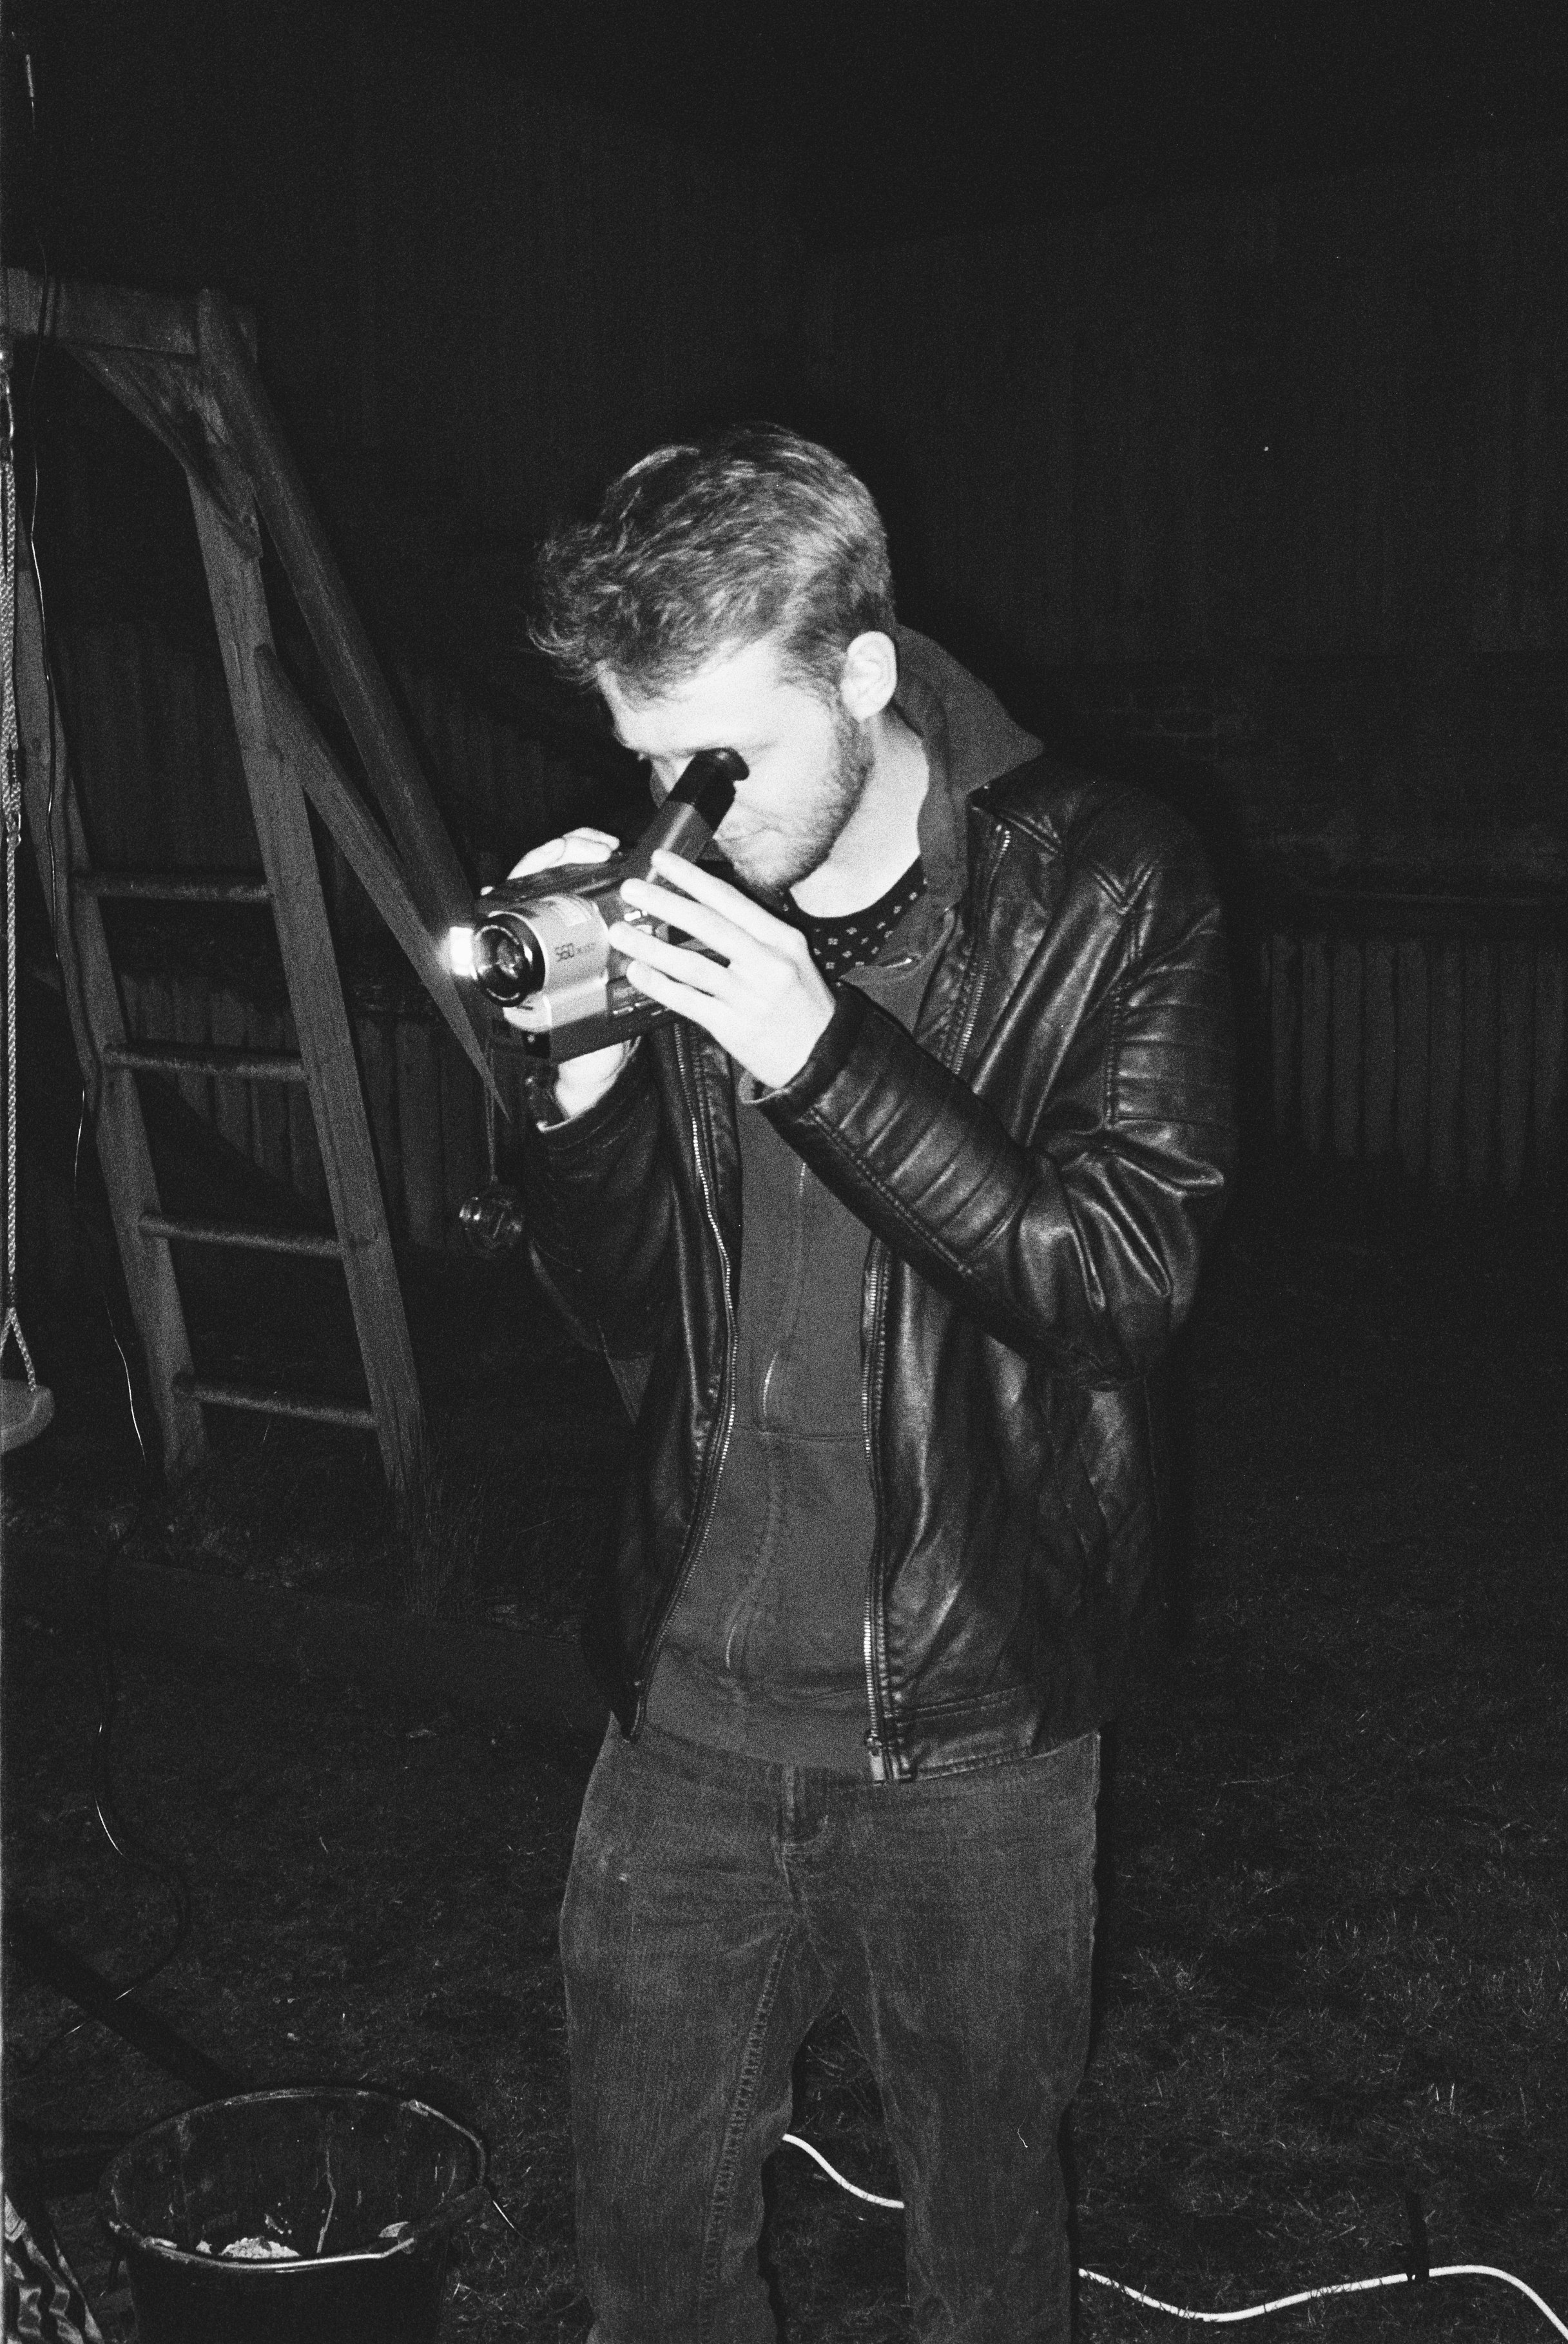 man in black leather jacket holding black dslr camera